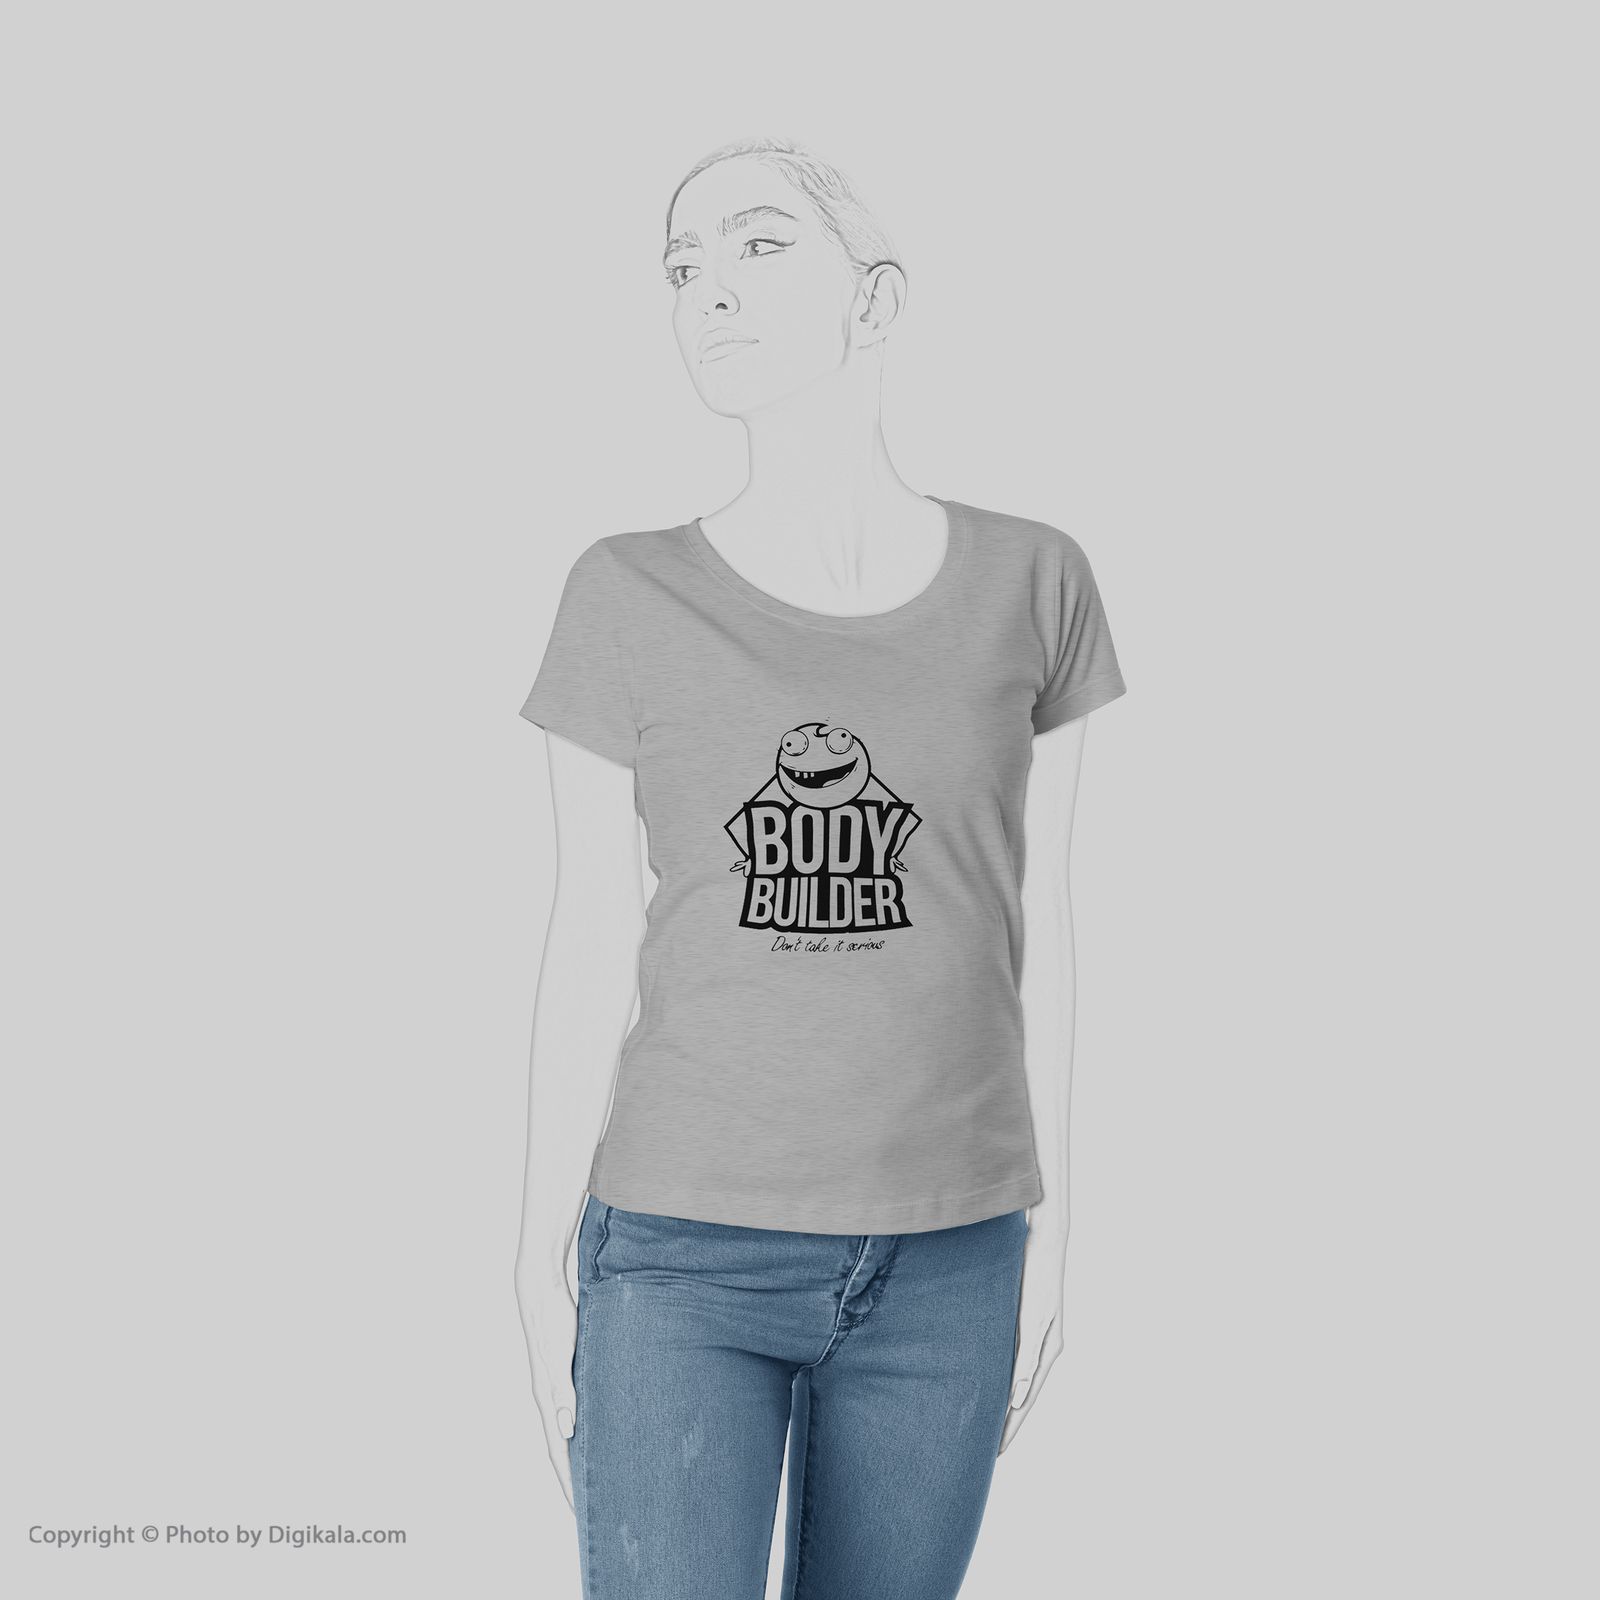 تی شرت زنانه به رسم طرح استیکر کد 4413 -  - 6